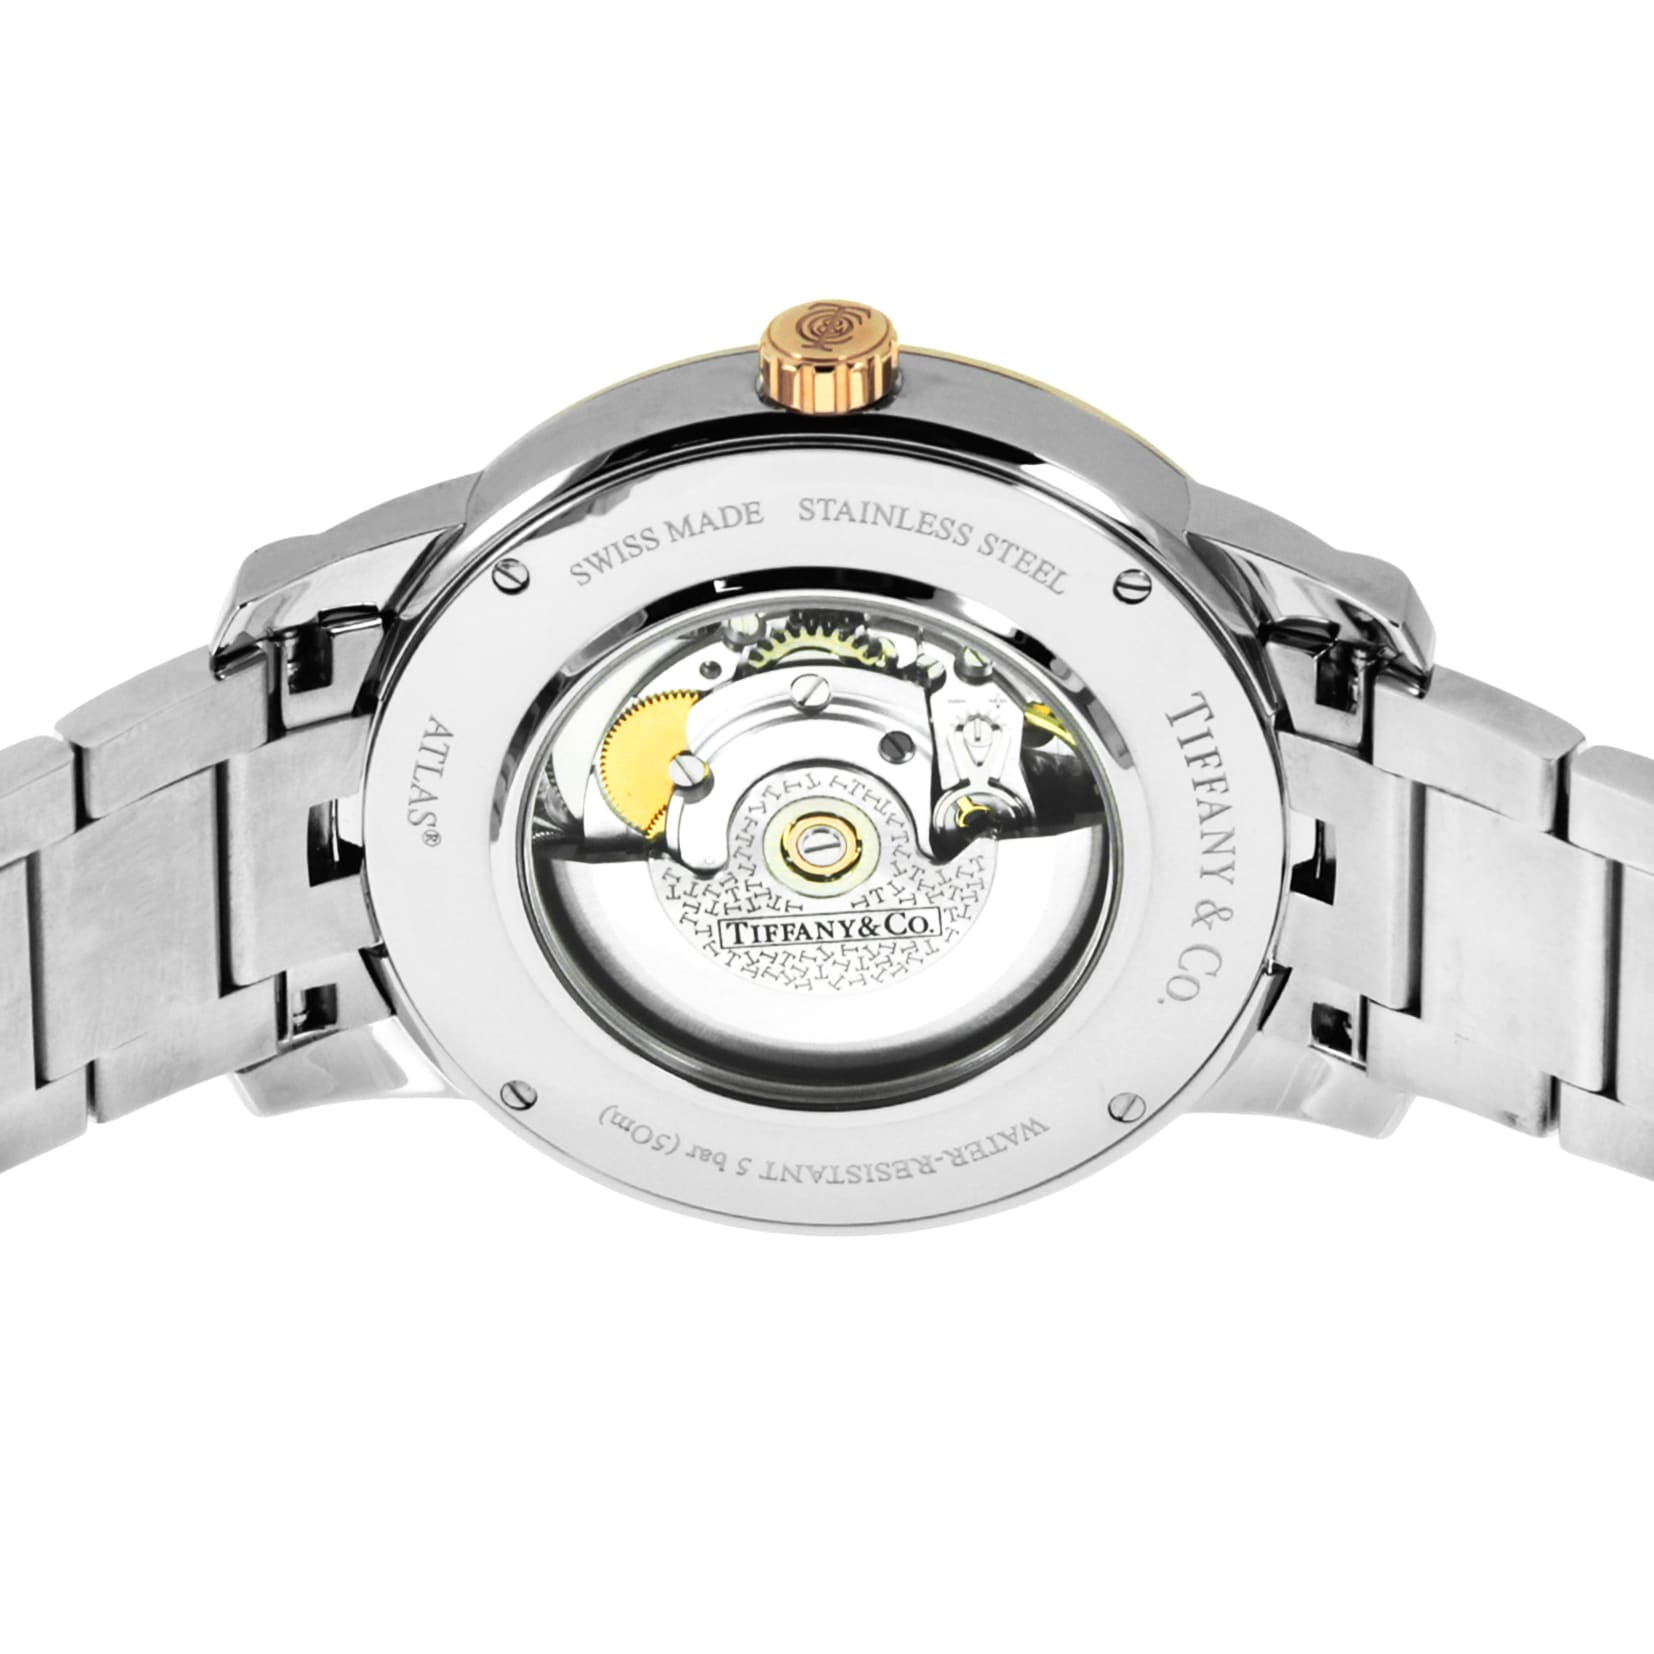 Tiffany & Co. ティファニー メンズ腕時計 AtlasDome Z1810.68.15A21A00A シルバー